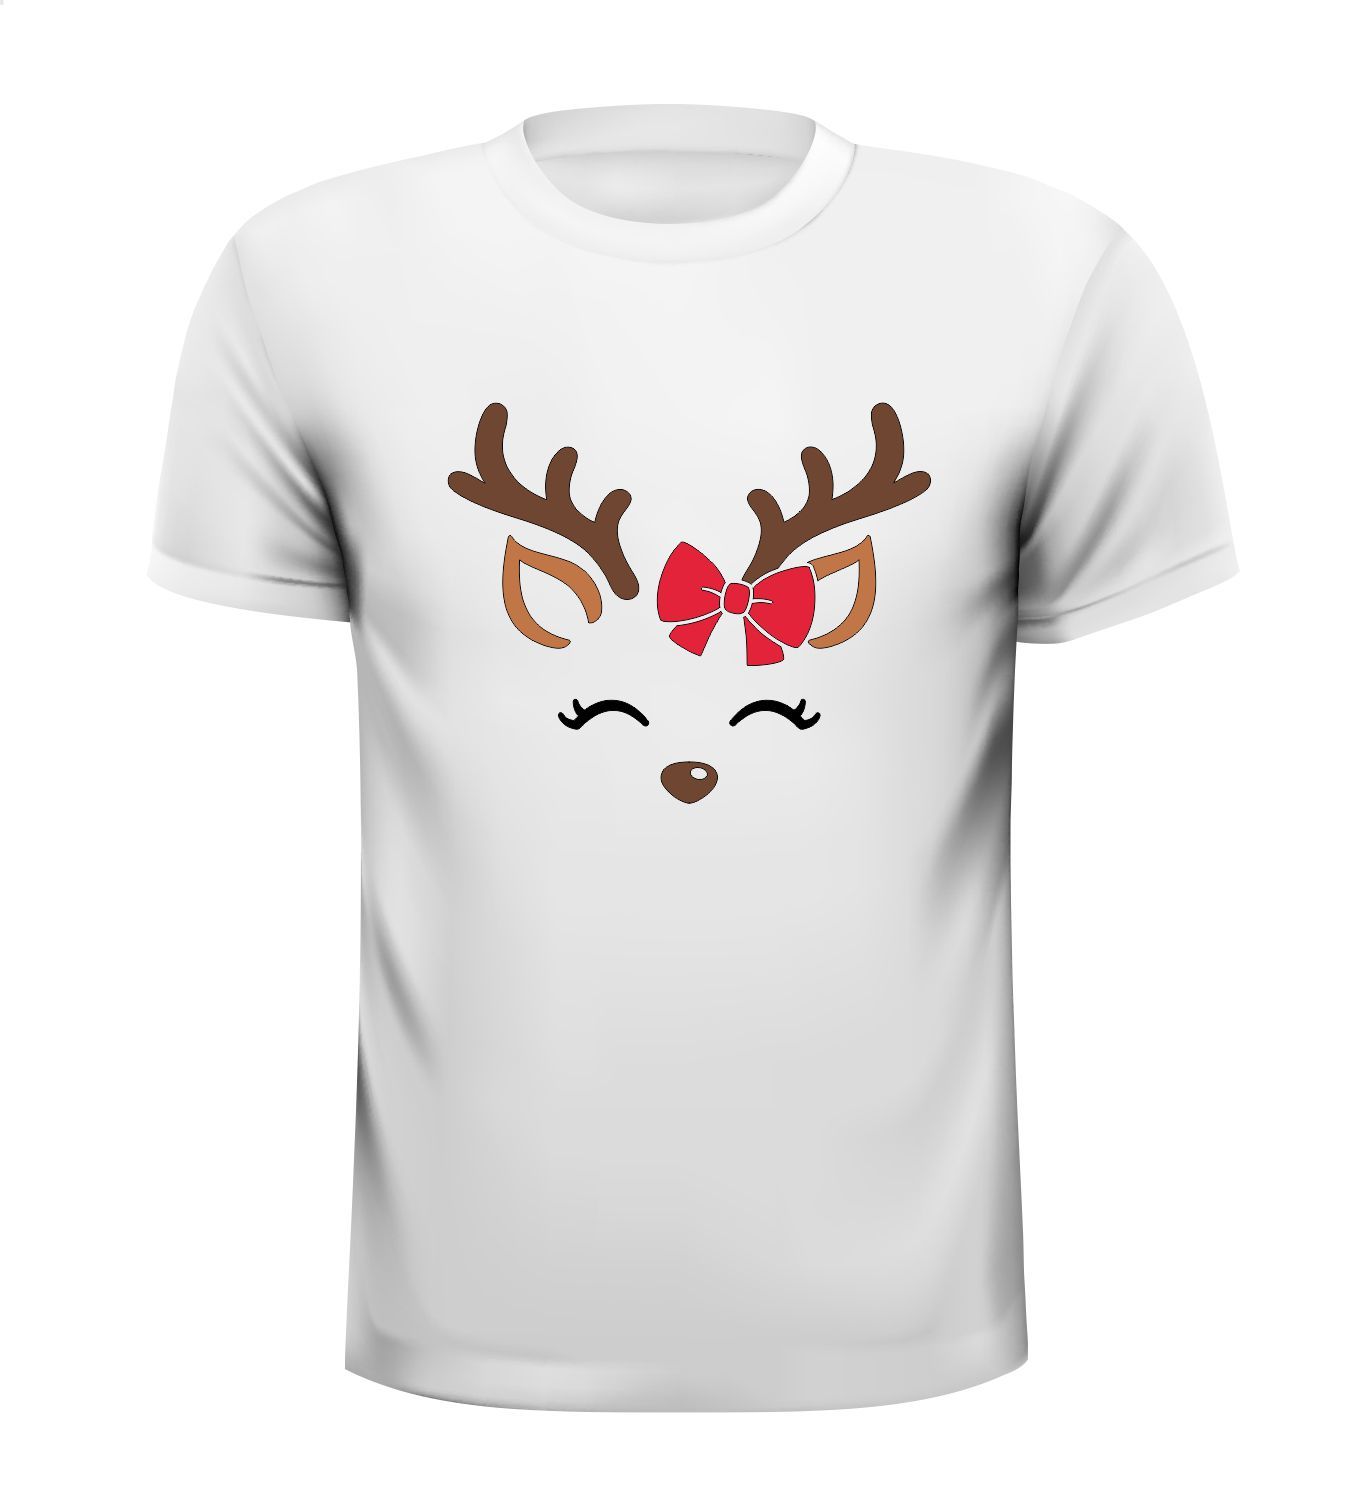 Kerst T-shirt met rendier vrouwtje cartoon opdruk